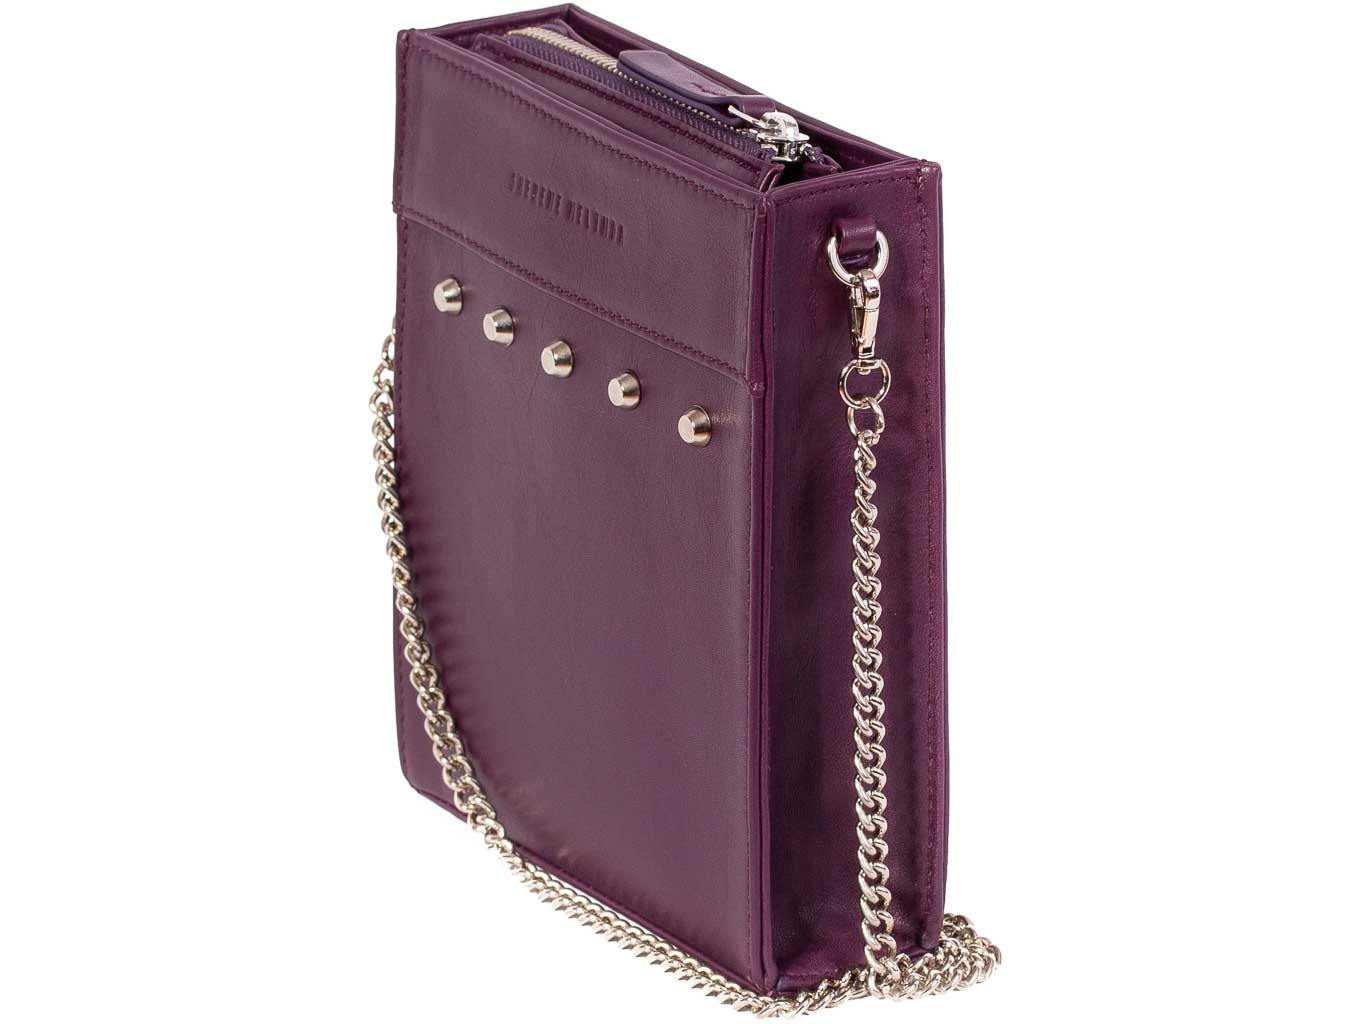 Messenger Studded Handbag in Deep Purple by Sherene Melinda - SHERENE MELINDA